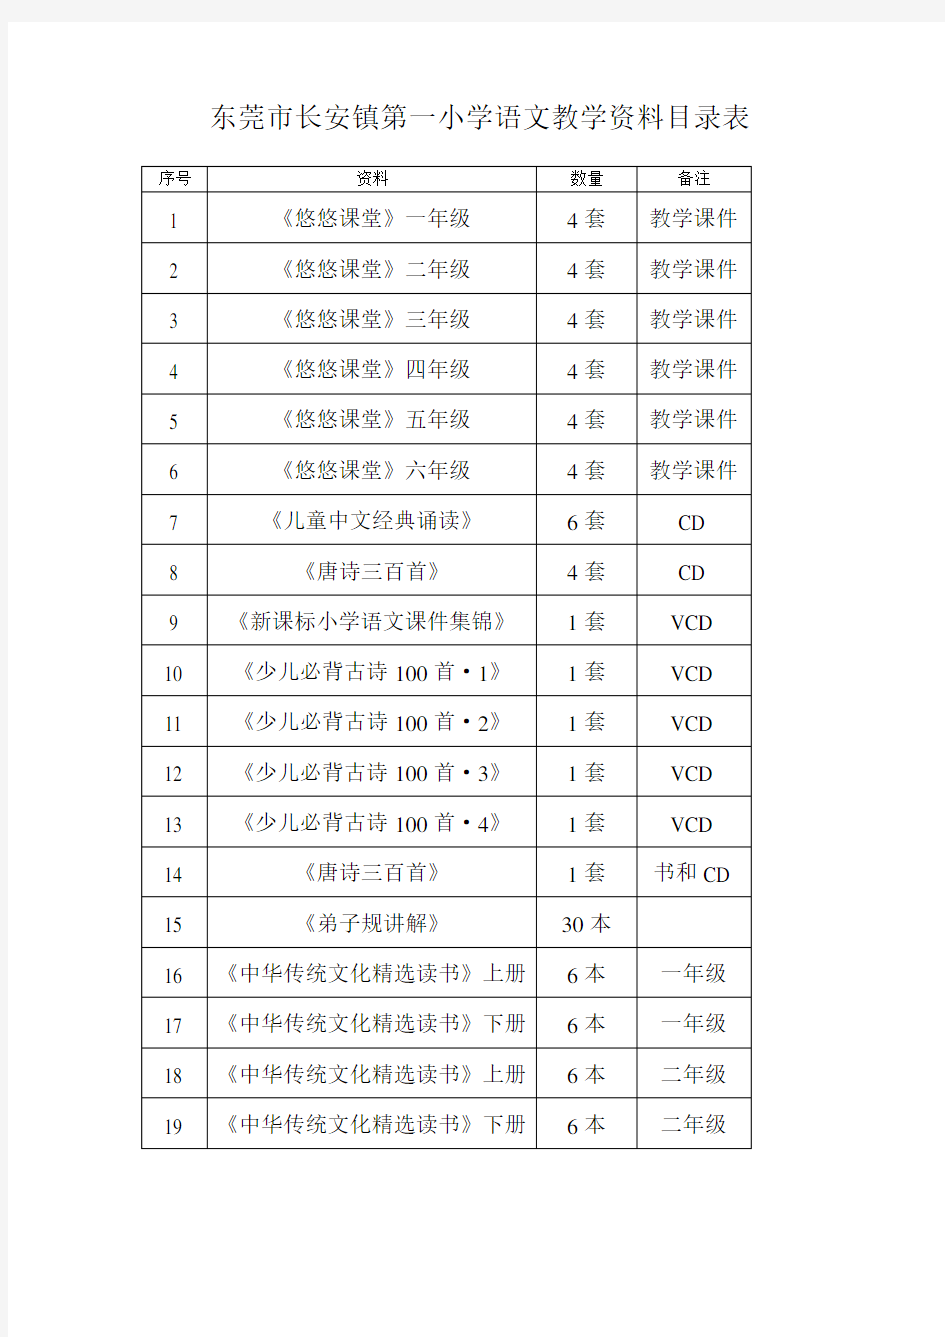 东莞市长安镇第一小学语文教学资料目录表